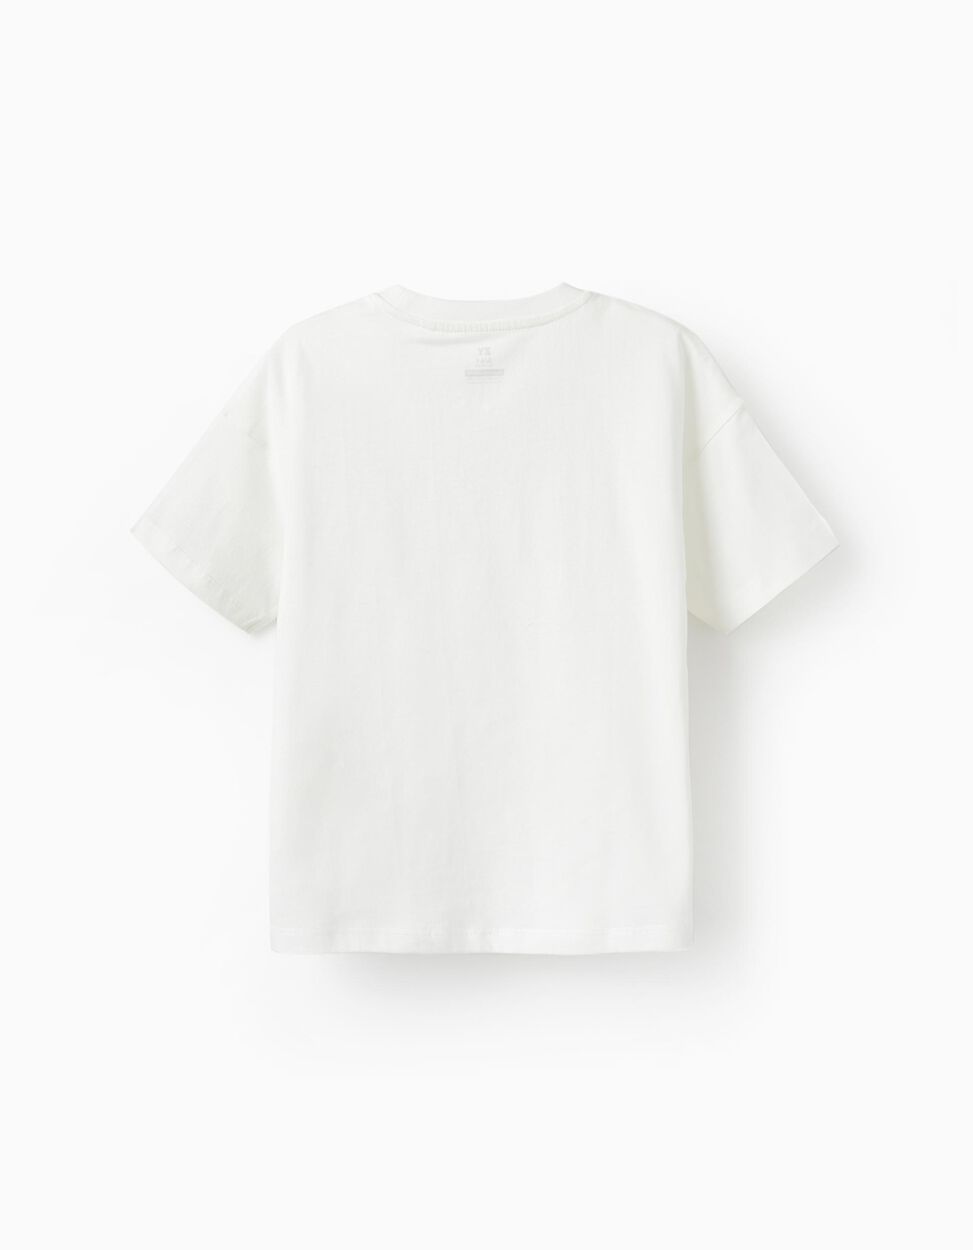 Comprar Online T-Shirt de Algodão para Menino 'No Bad Waves', Branco